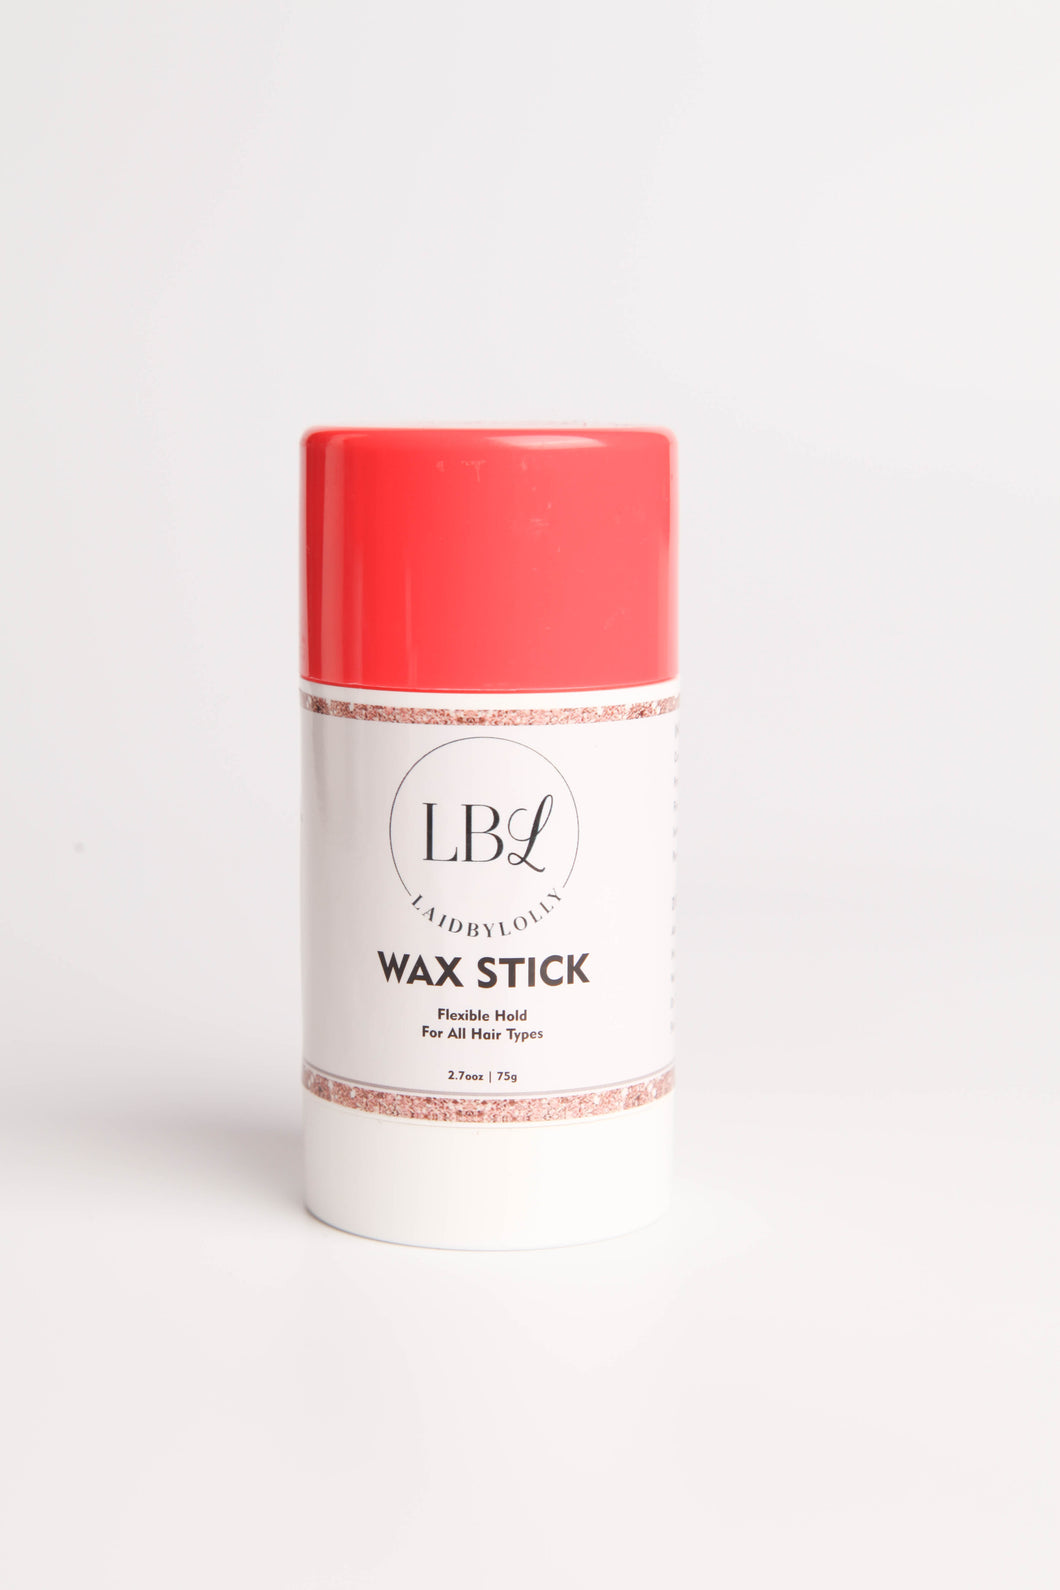 LBL Wax Stick